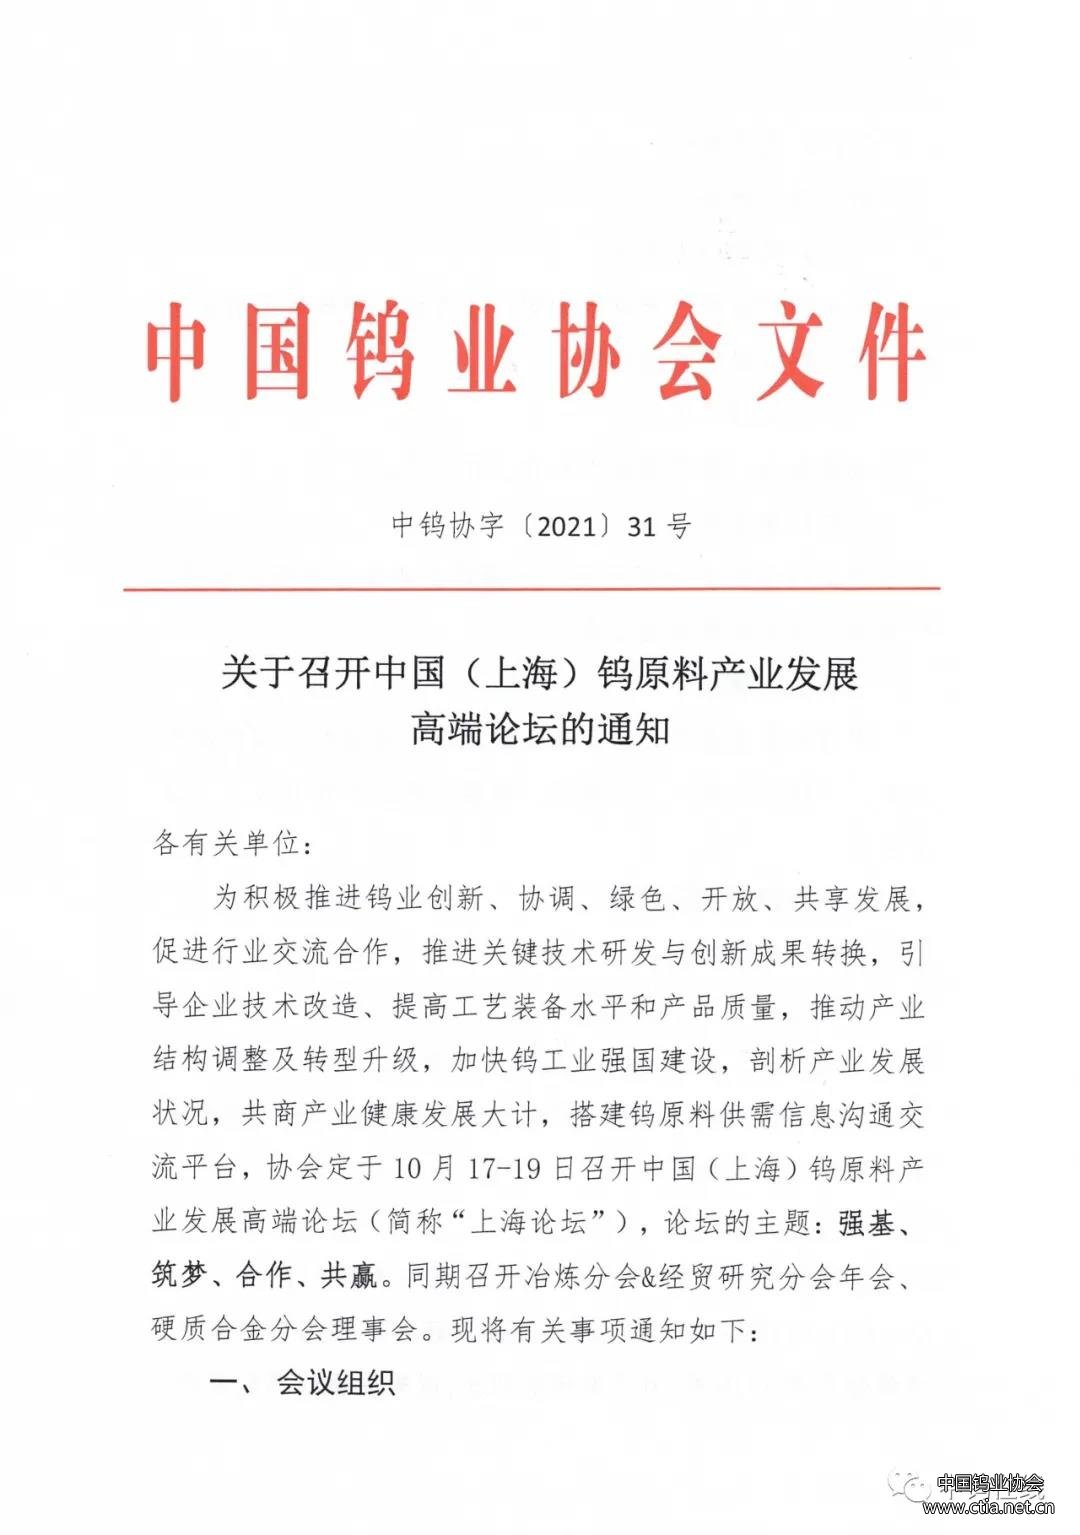 关于召开中国（上海）钨原料产业发展高端论坛的通知